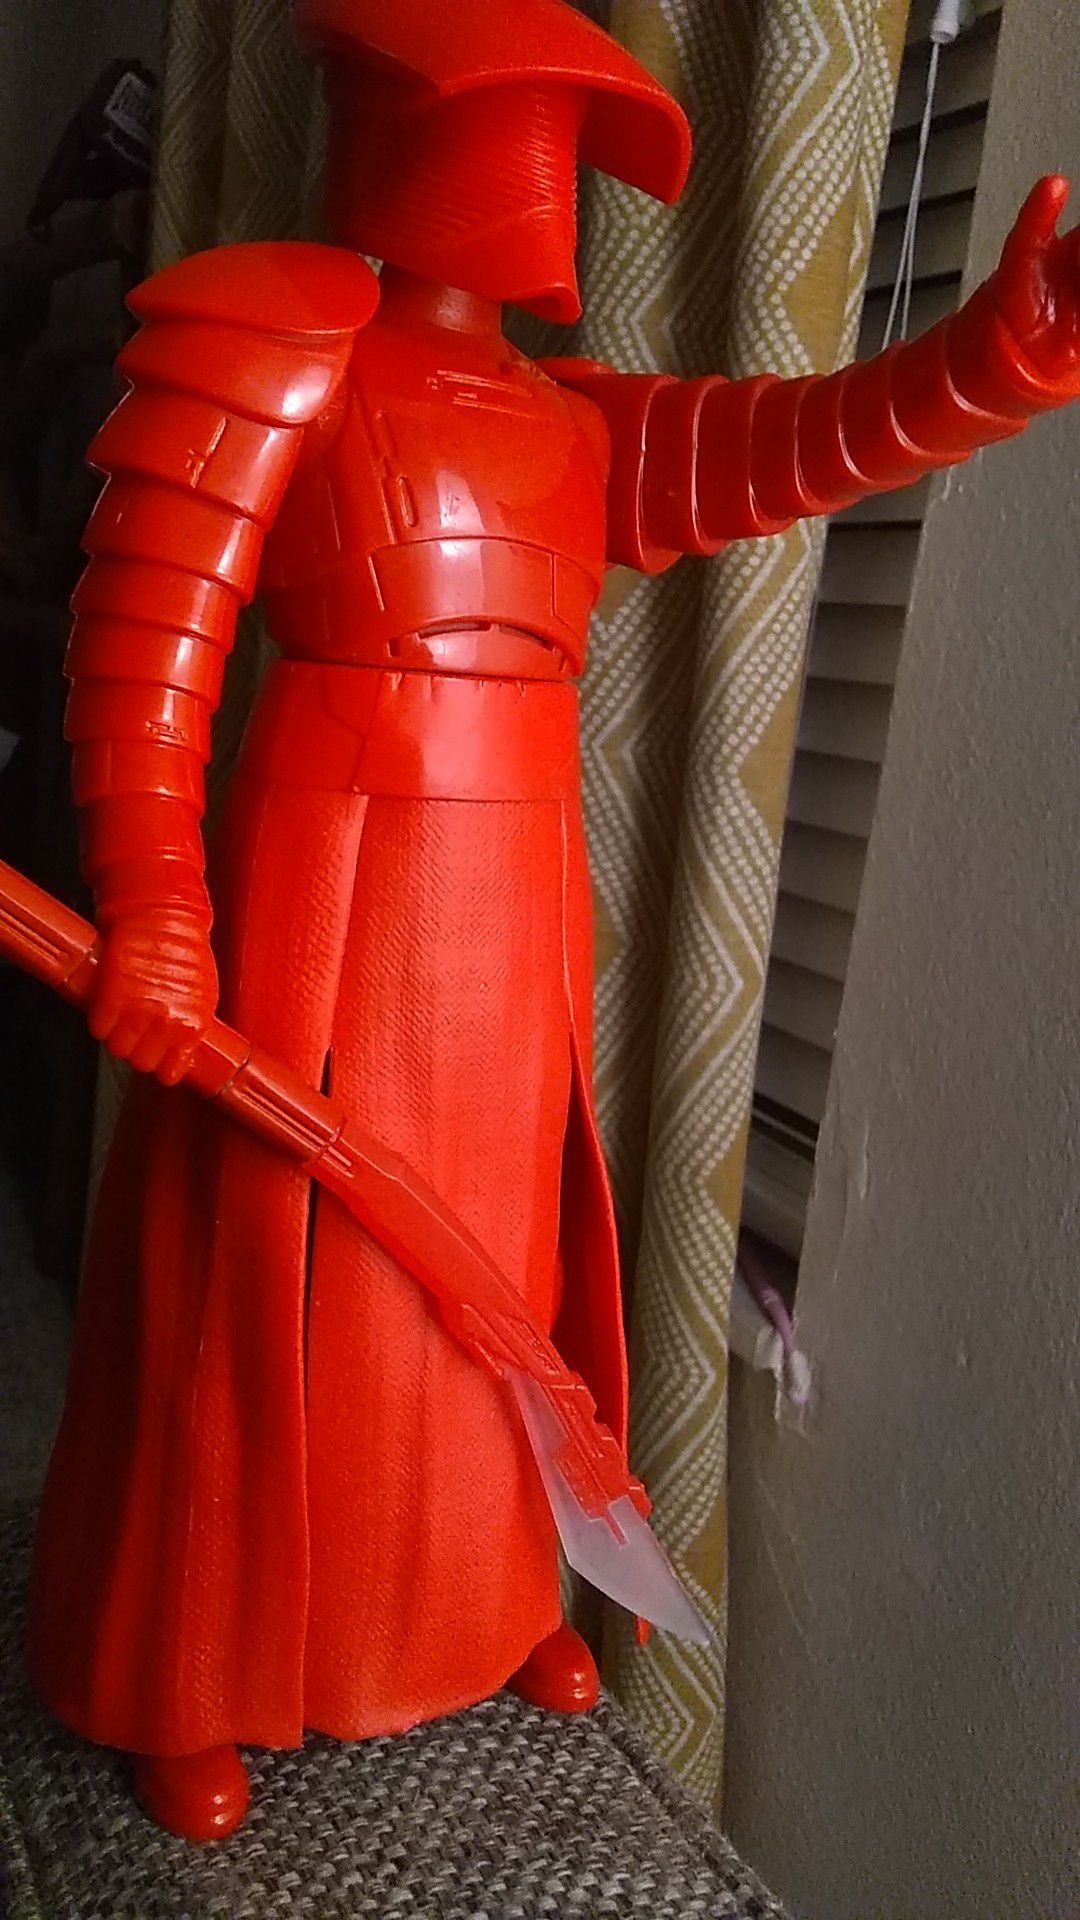 Red samurai action figure